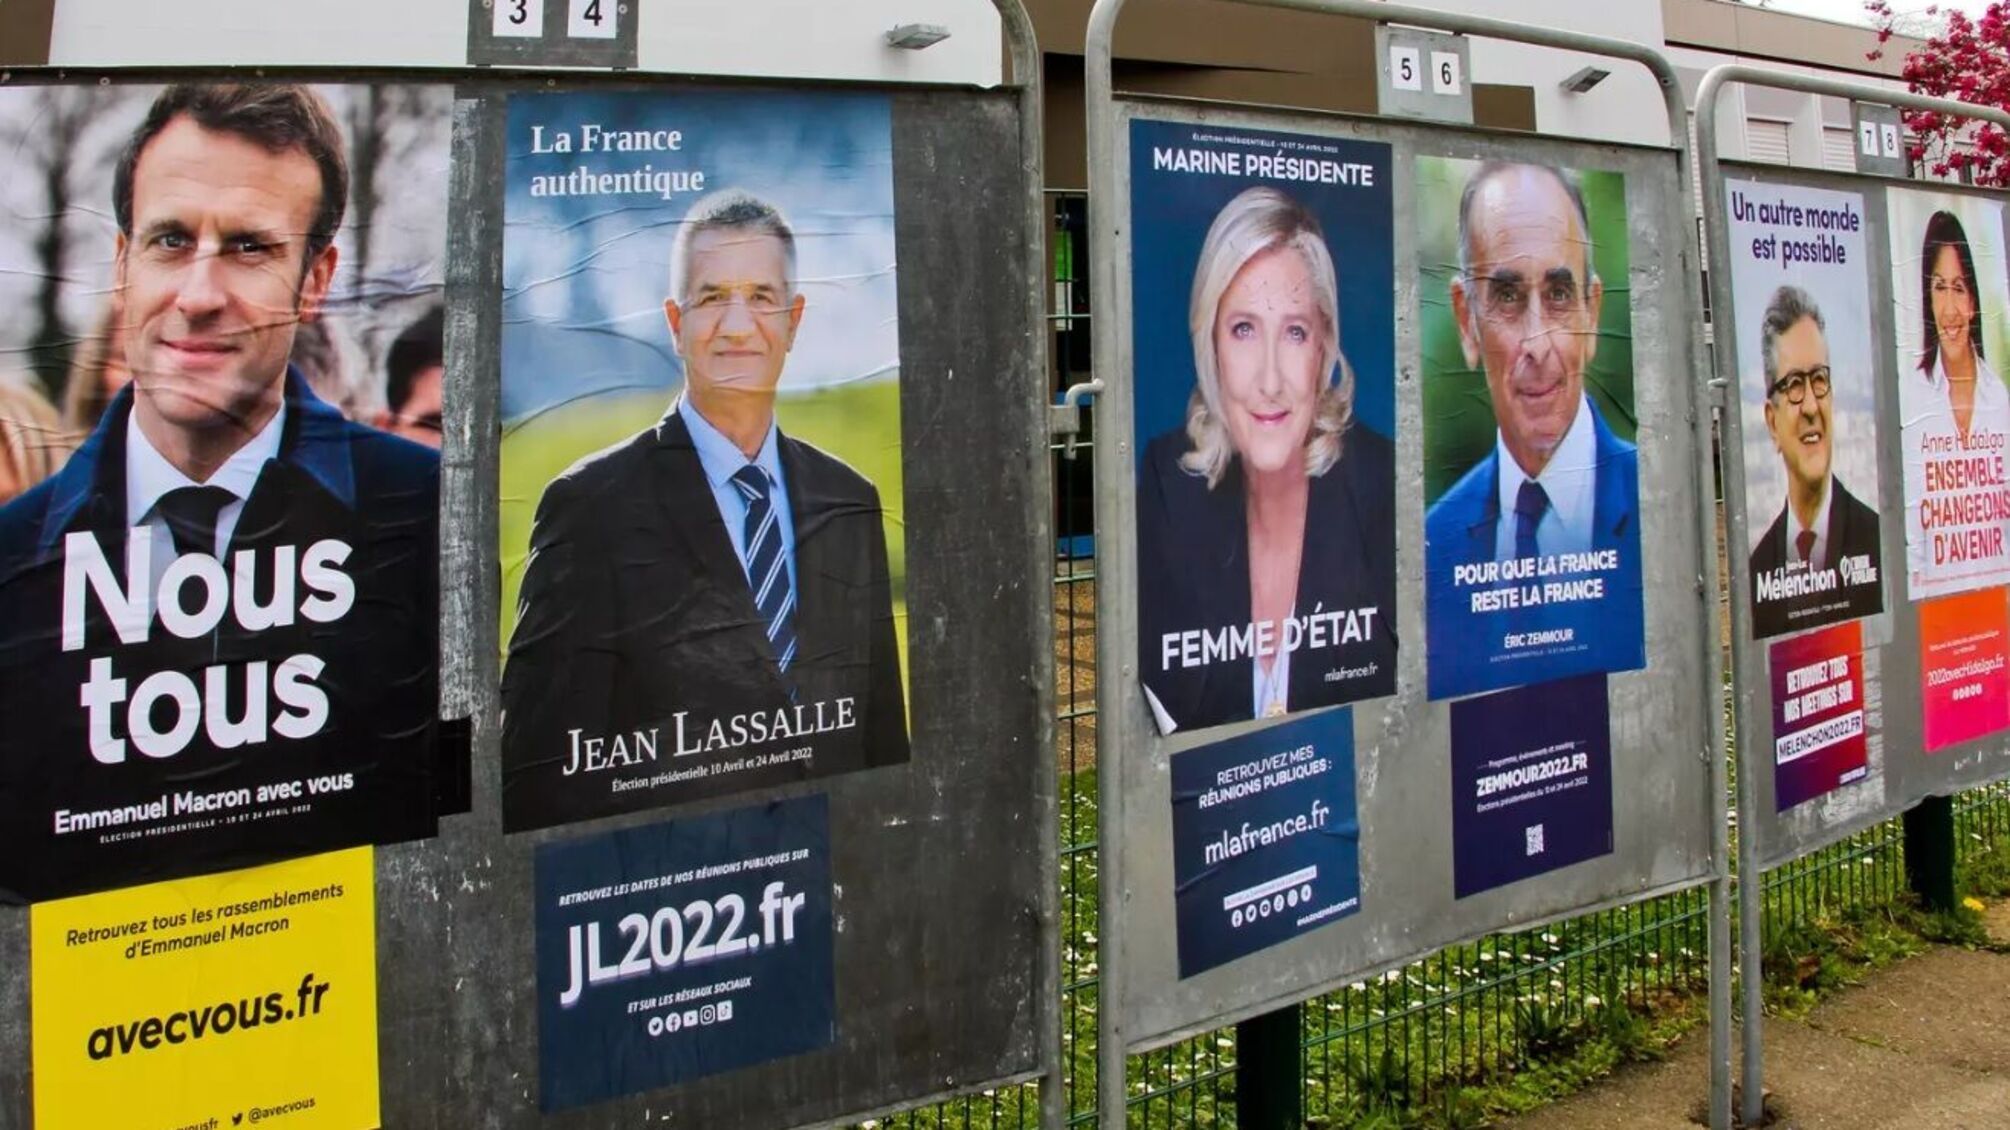 Сегодня во Франции стартовали президентские выборы